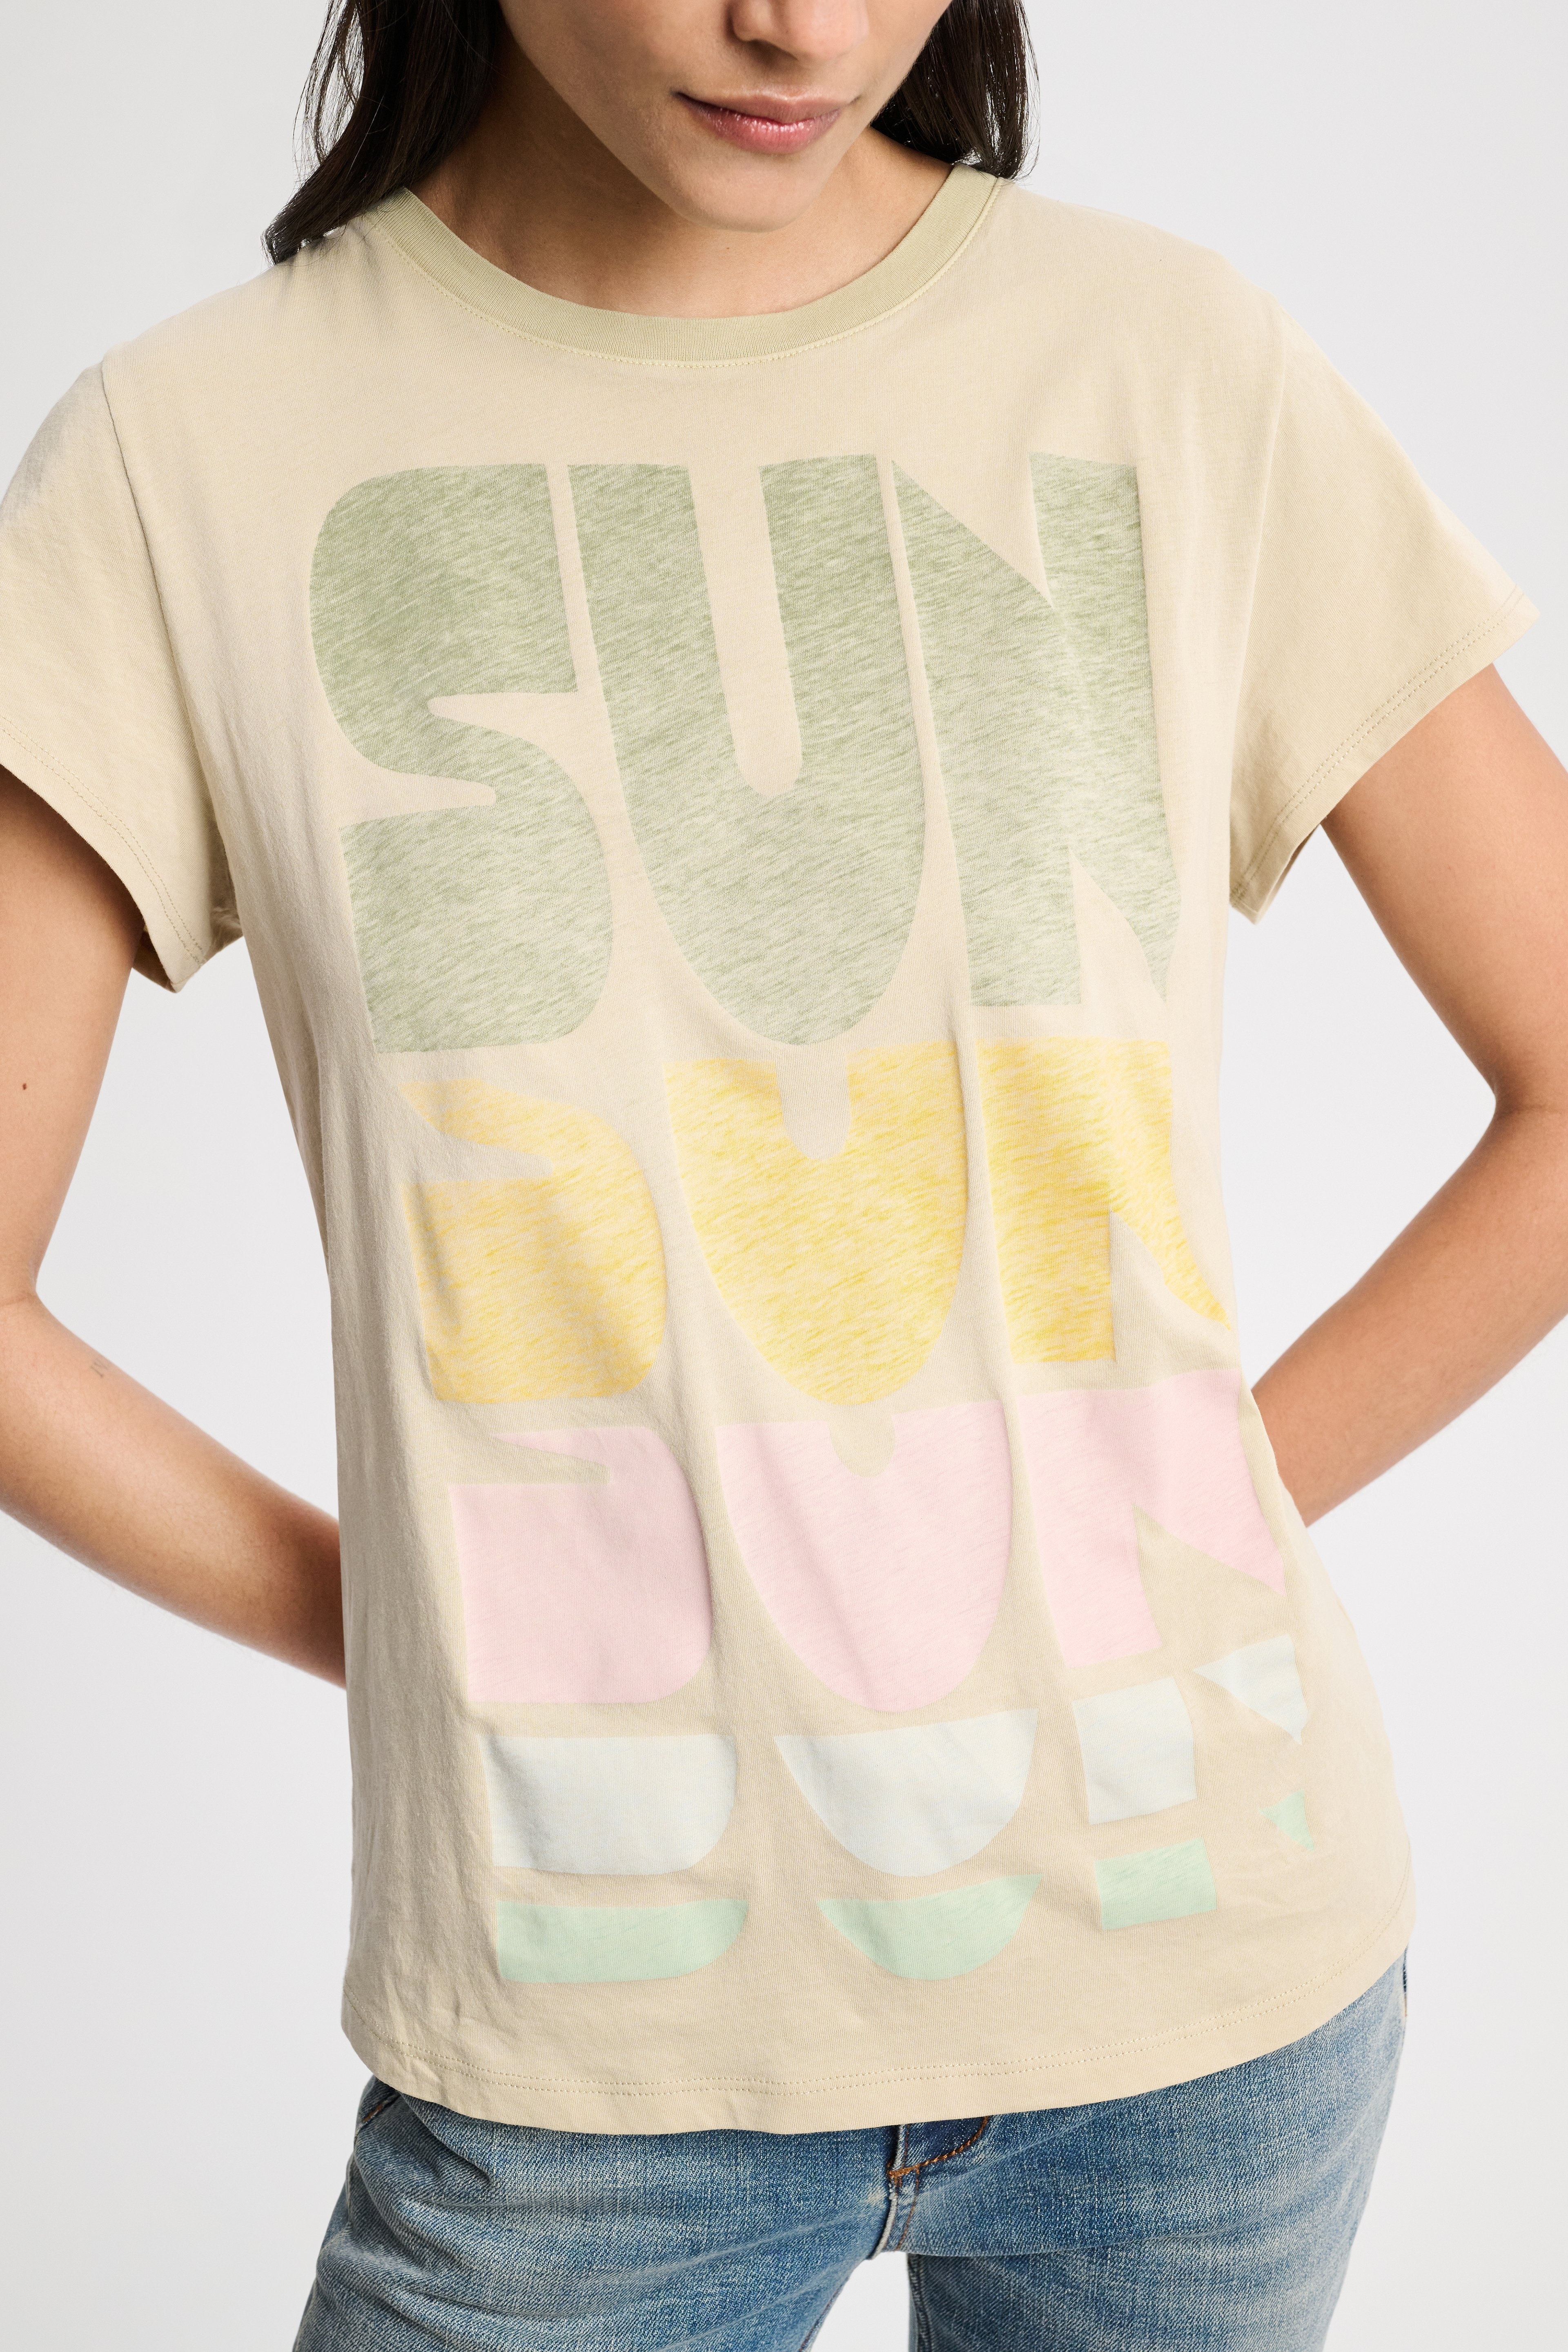 SUN CHILD shirt - 4